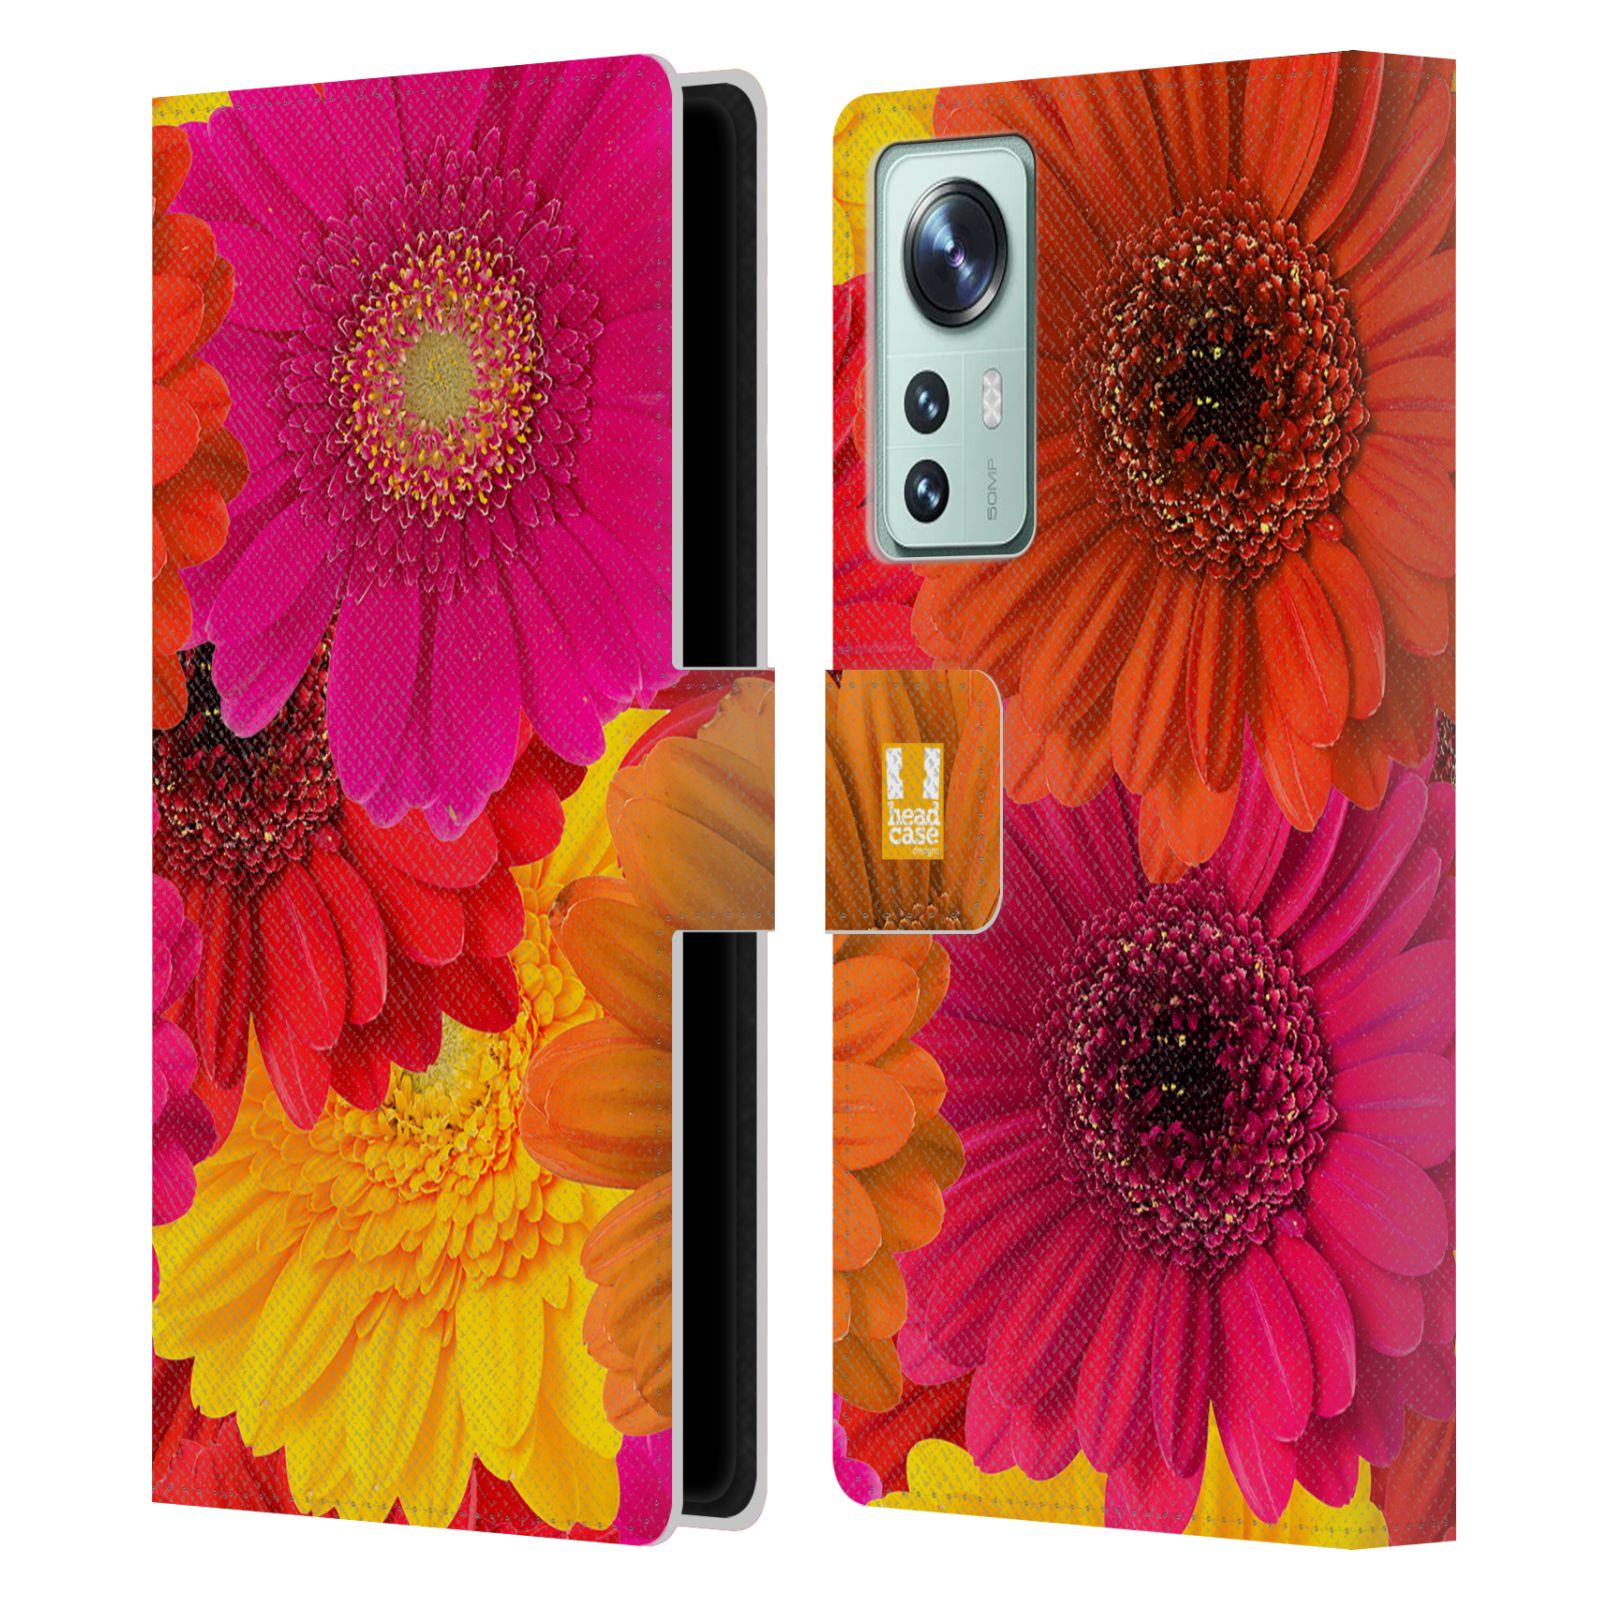 Pouzdro HEAD CASE na mobil Xiaomi 12 květy foto fialová, oranžová GERBERA